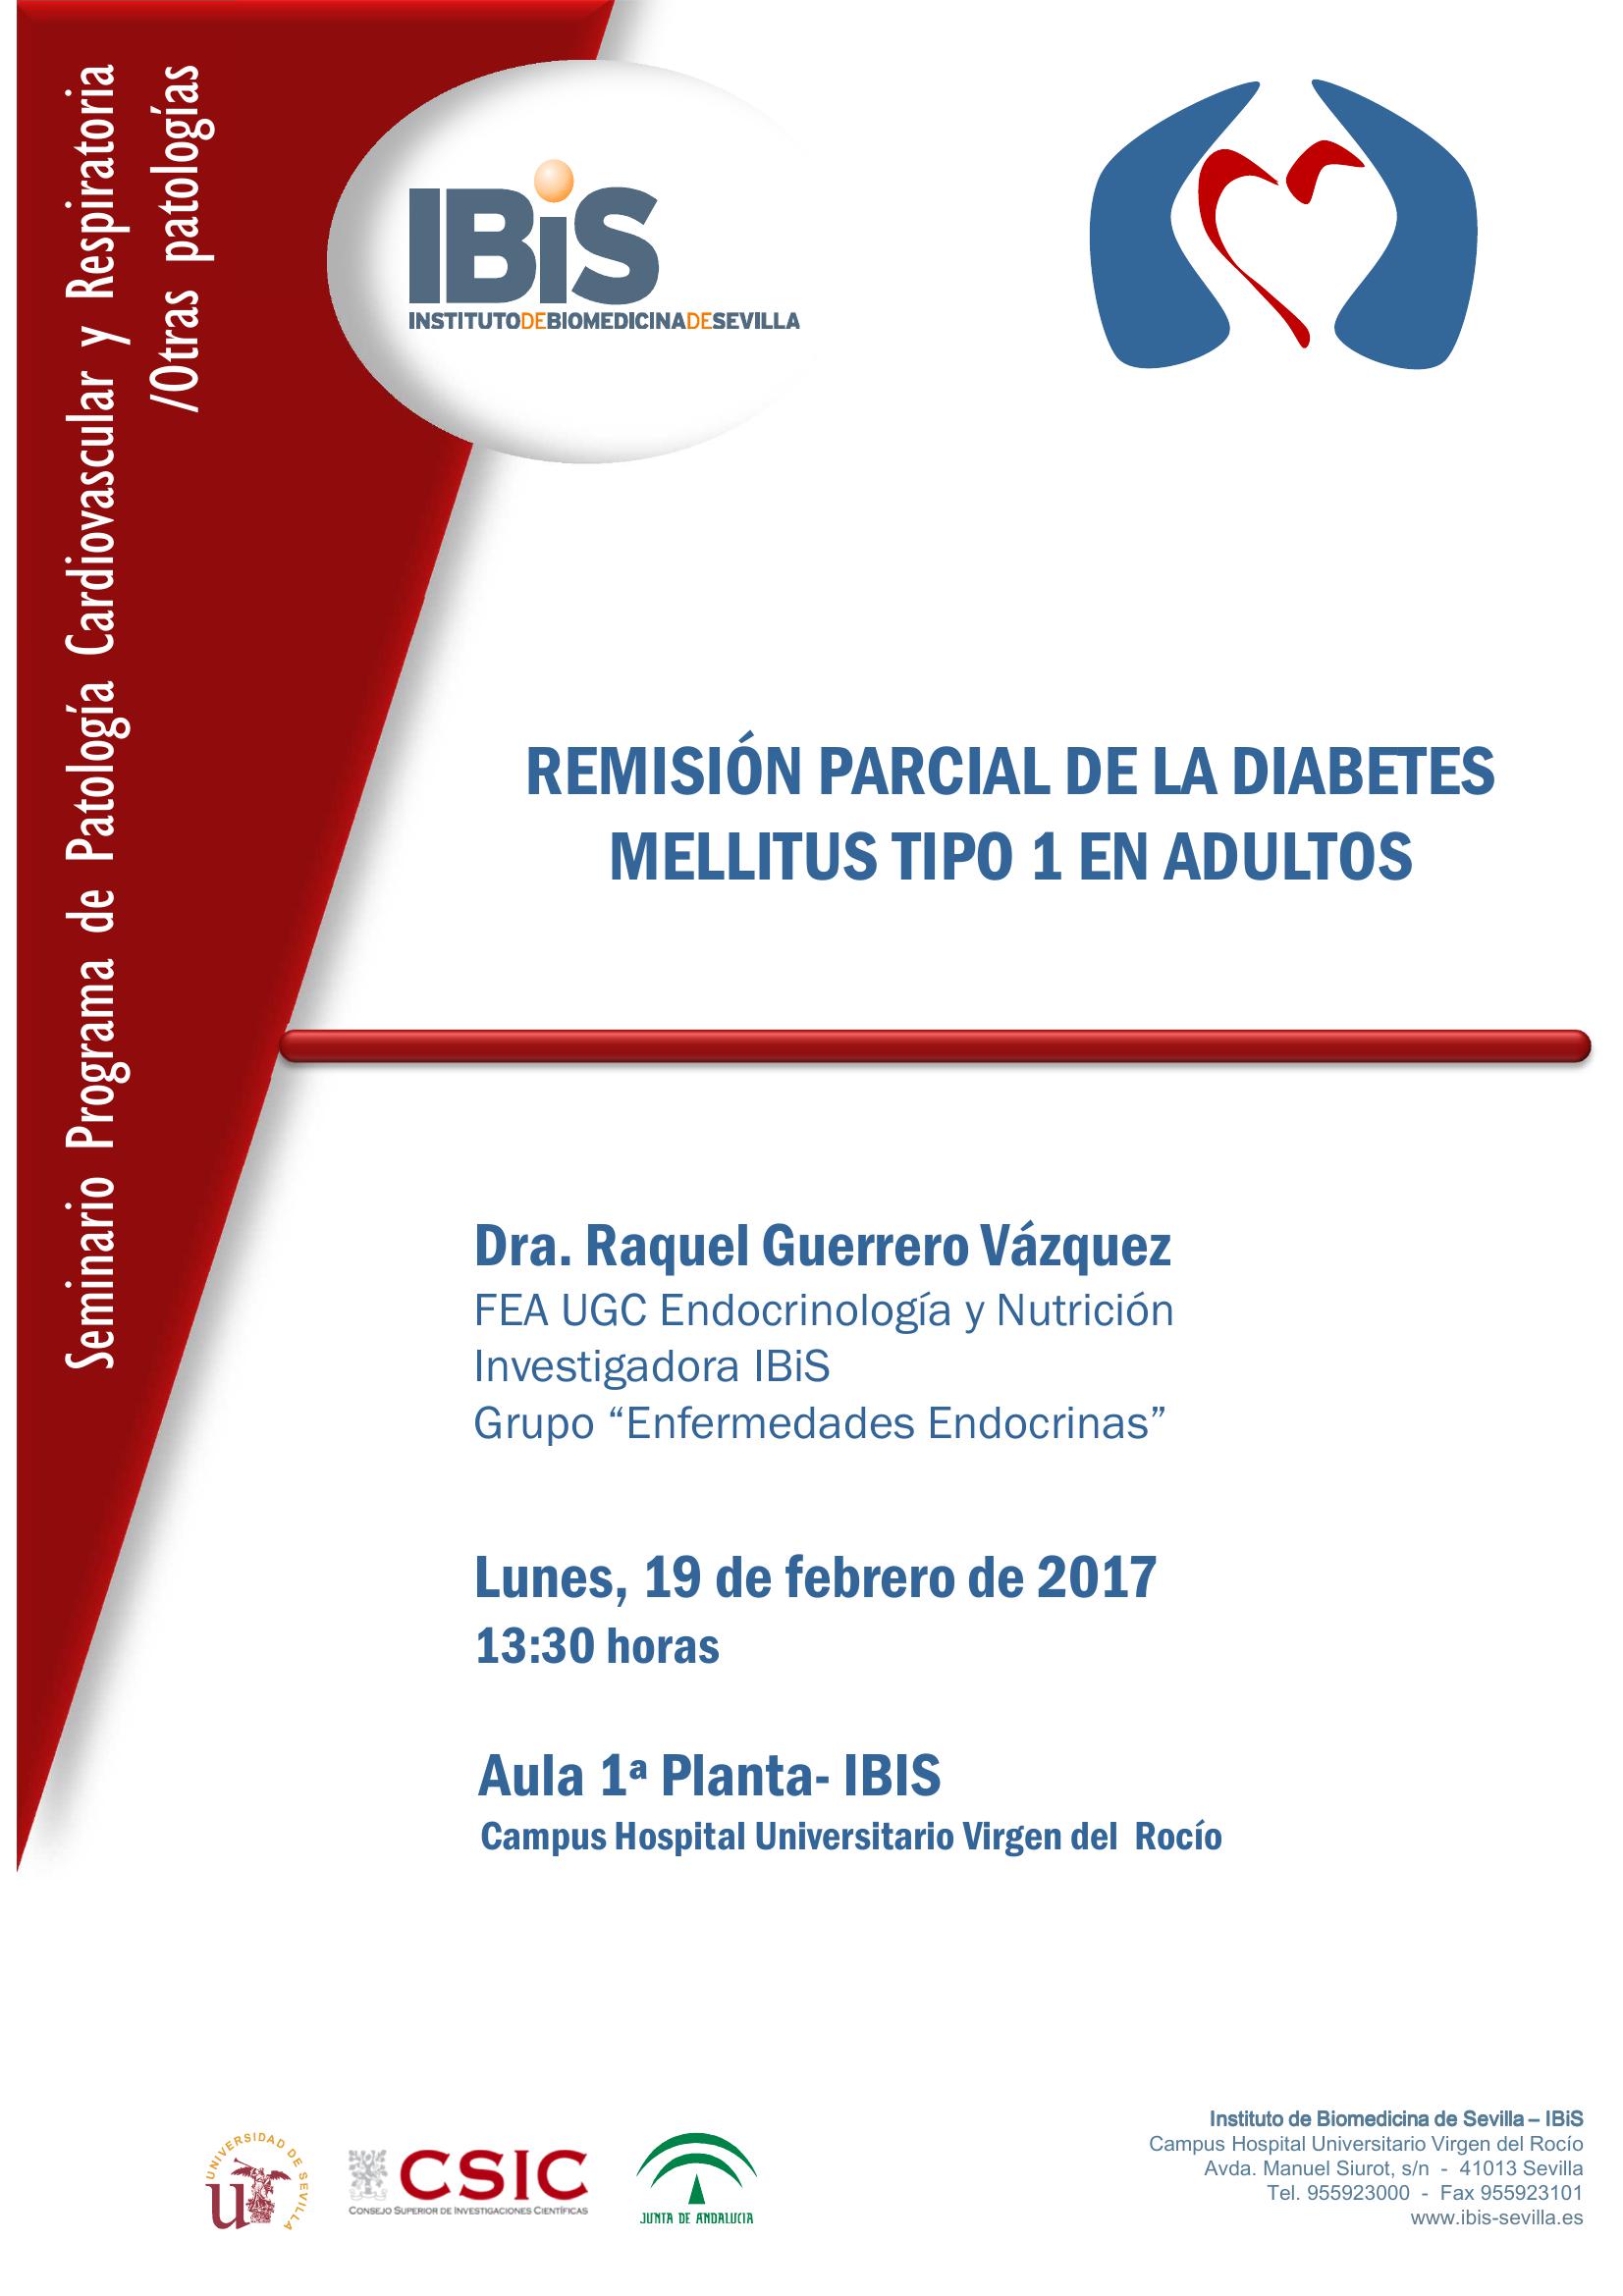 Poster: REMISIÓN PARCIAL DE LA DIABETES MELLITUS TIPO 1 EN ADULTOS